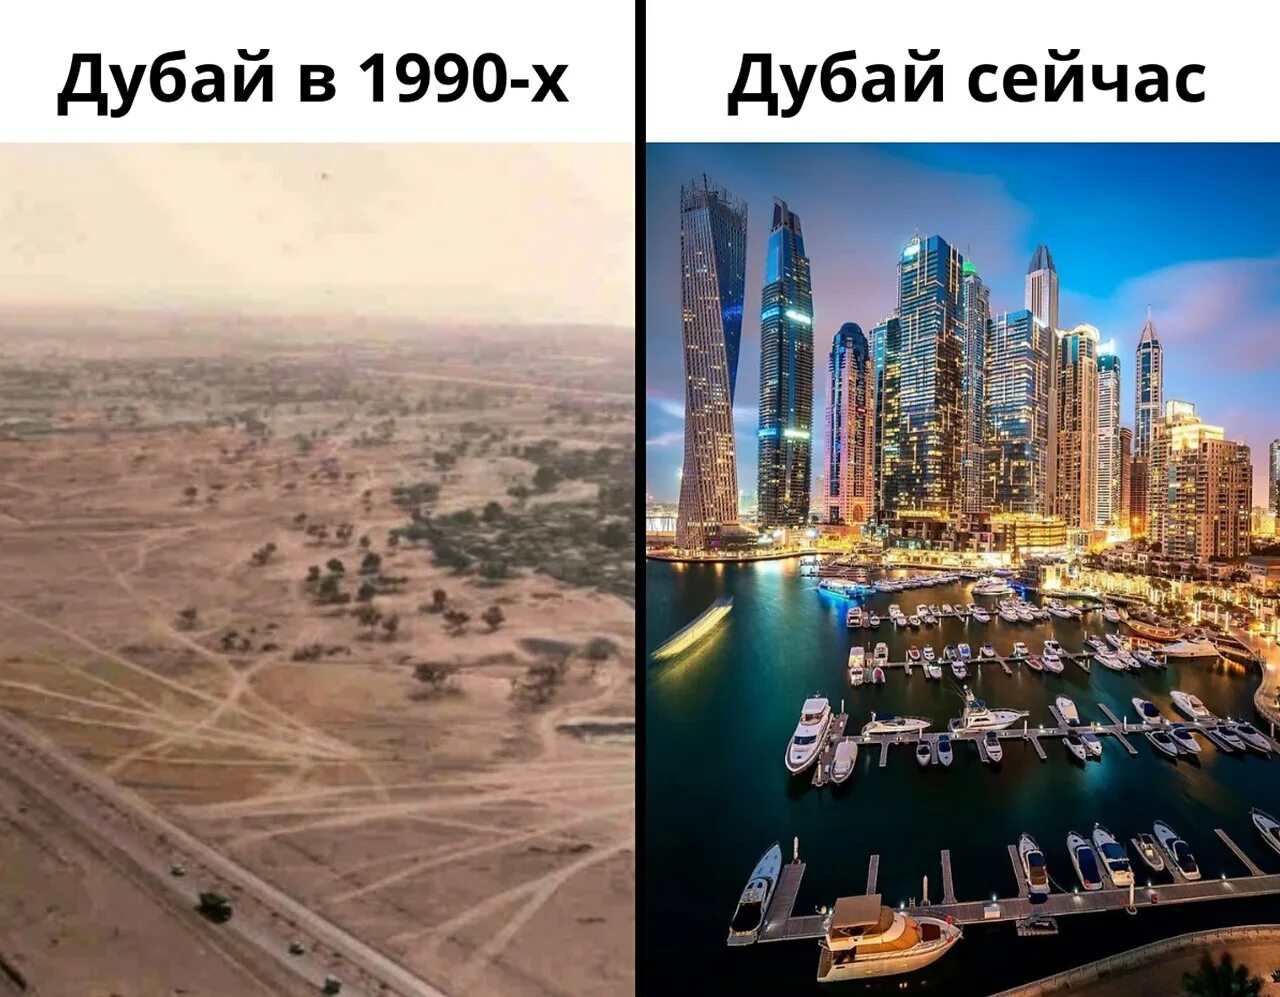 Сколько времени в дубае сейчас точное время. Дубай 1995 год. Дубаи 1990 и сейчас. ОАЭ В 90 И сейчас. Дубай до и после.